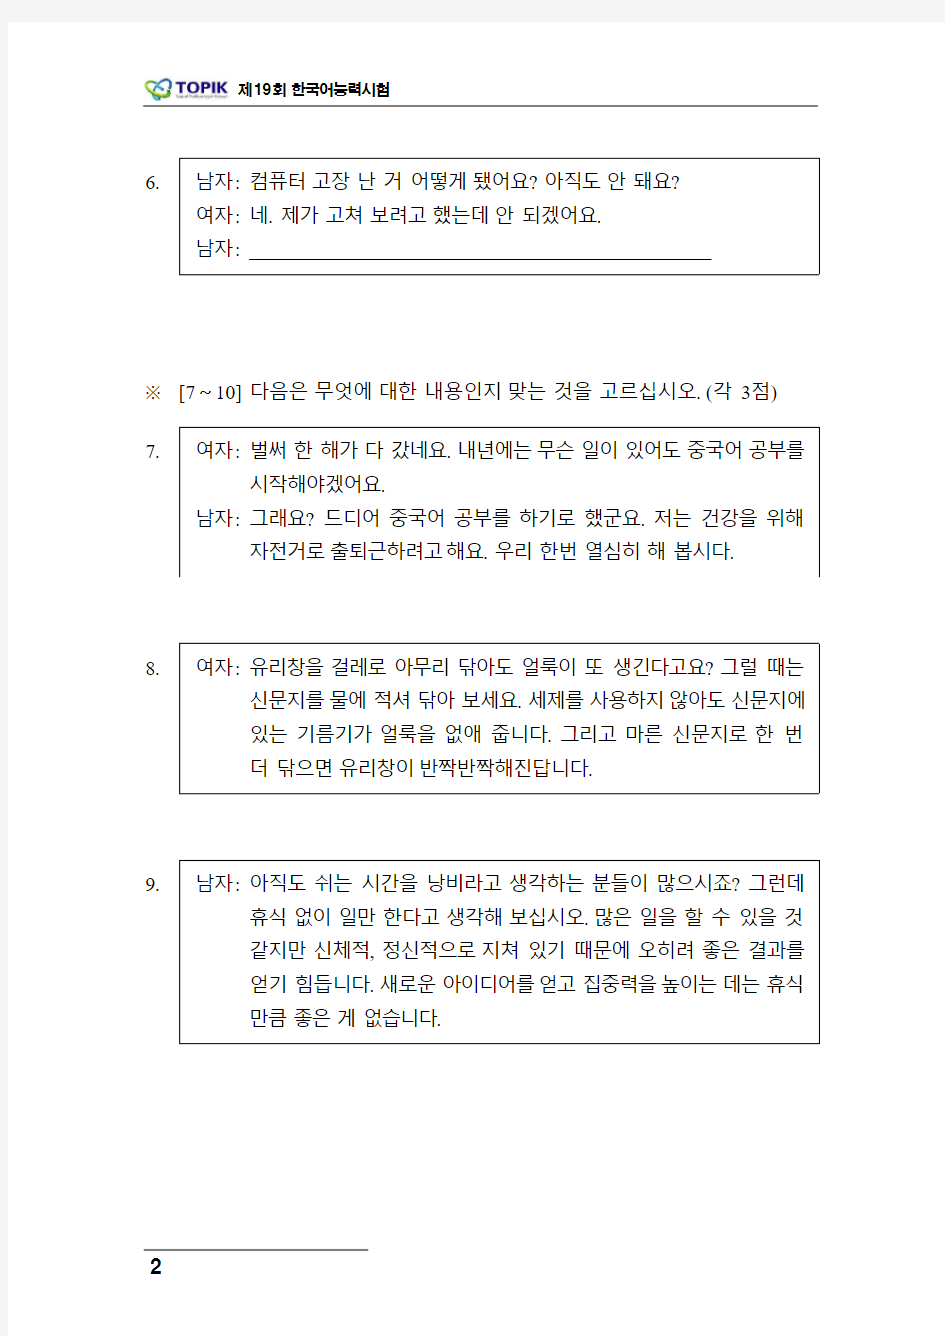 韩国语能力考试19届中级-听力文本